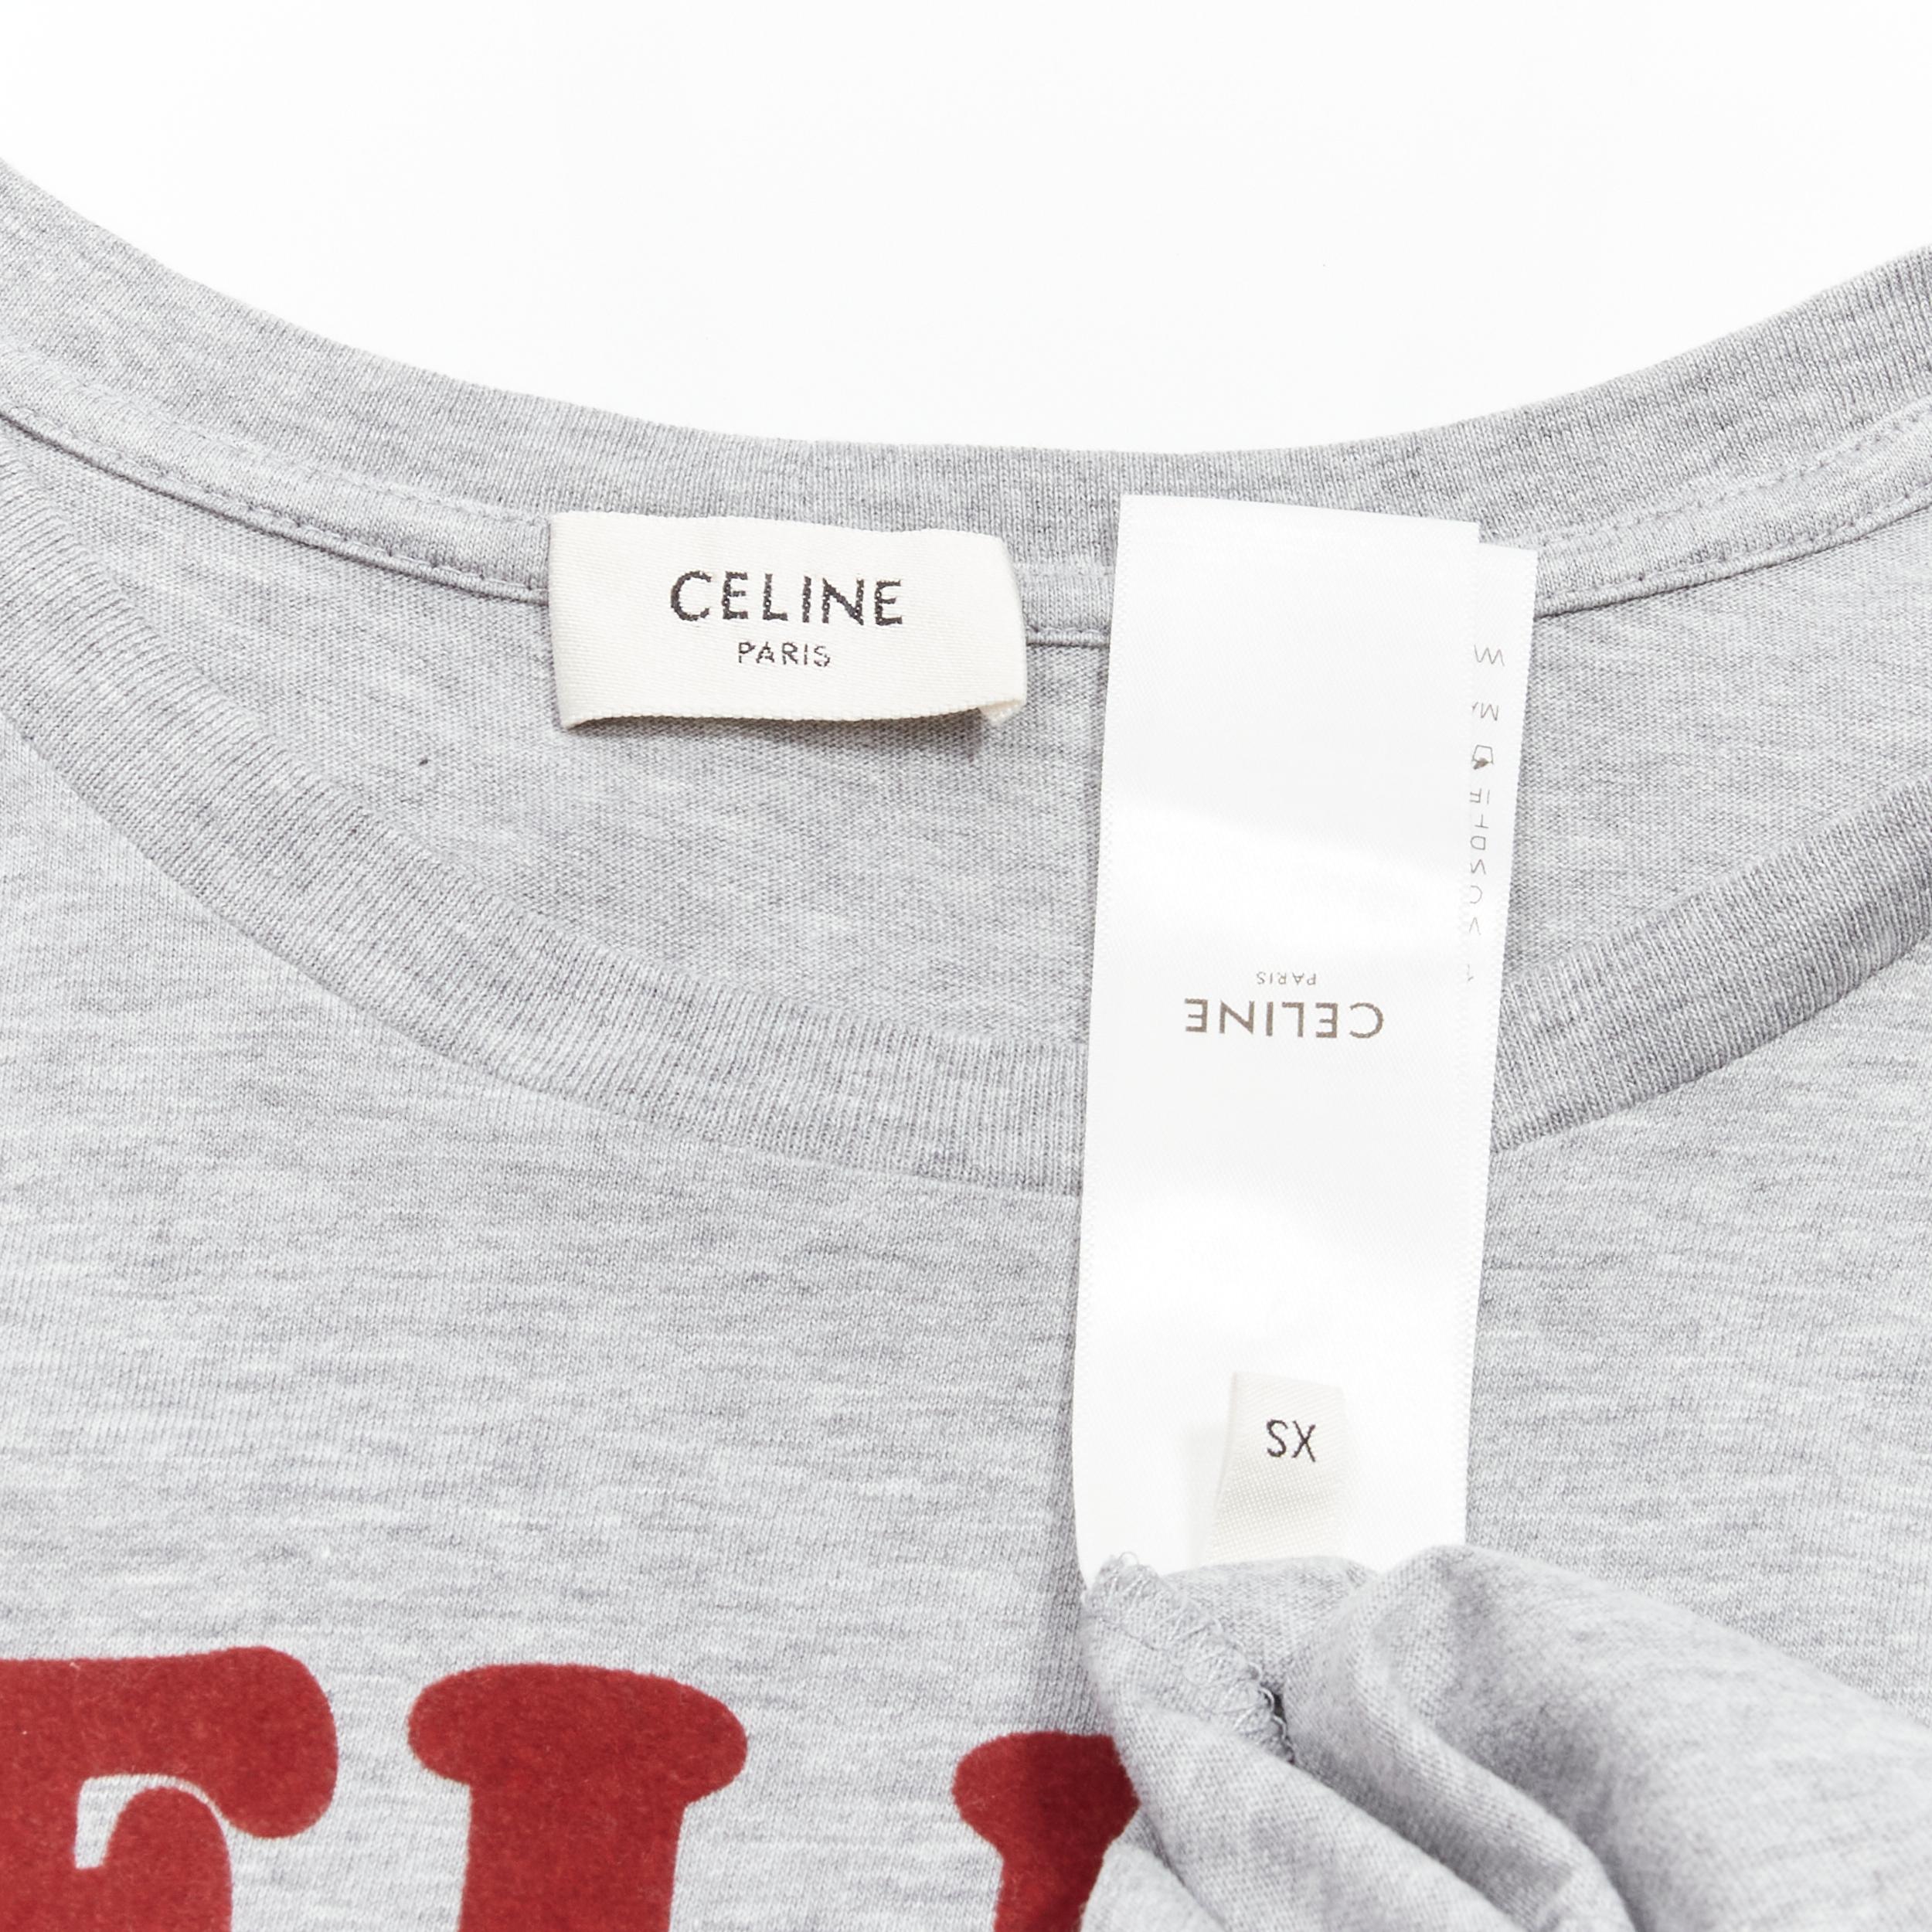 CELINE PARIS red felt logo grey cotton crew neck tshirt XS For Sale 1